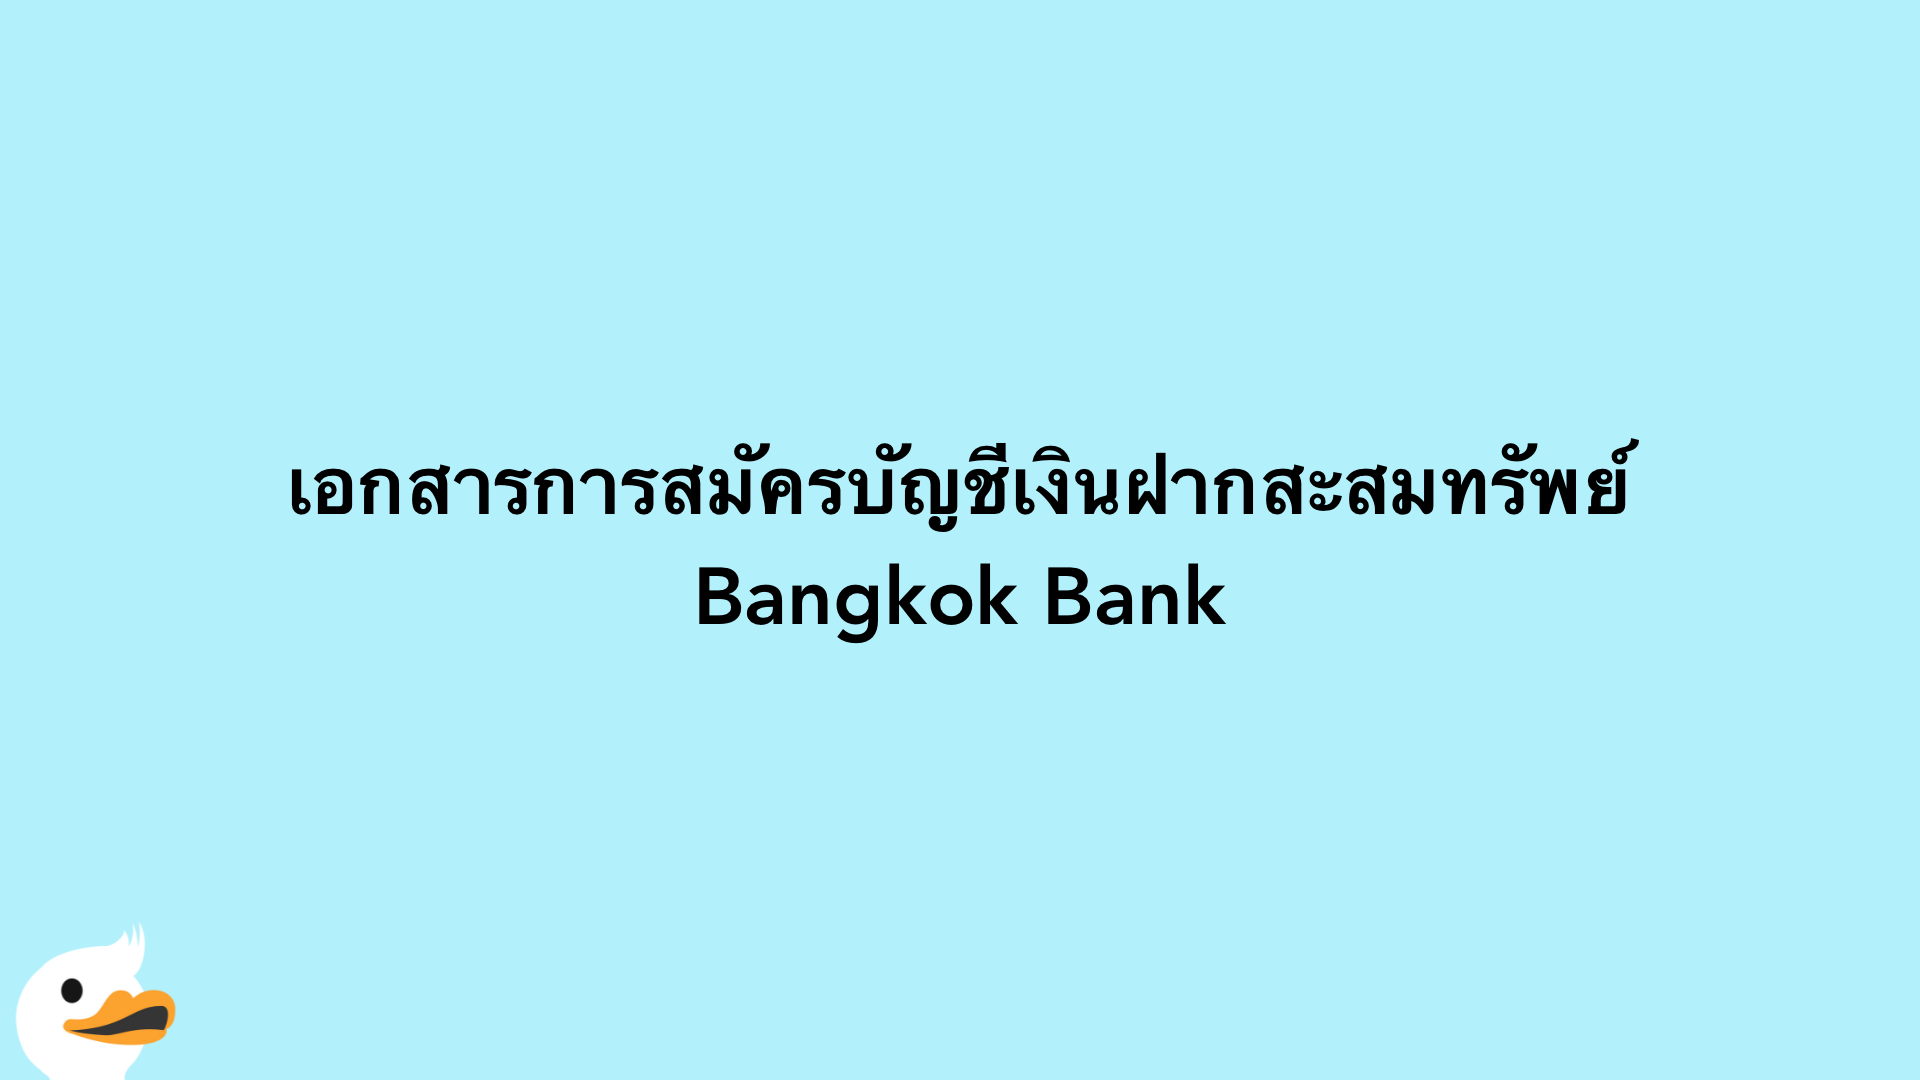 เอกสารการสมัครบัญชีเงินฝากสะสมทรัพย์ Bangkok Bank